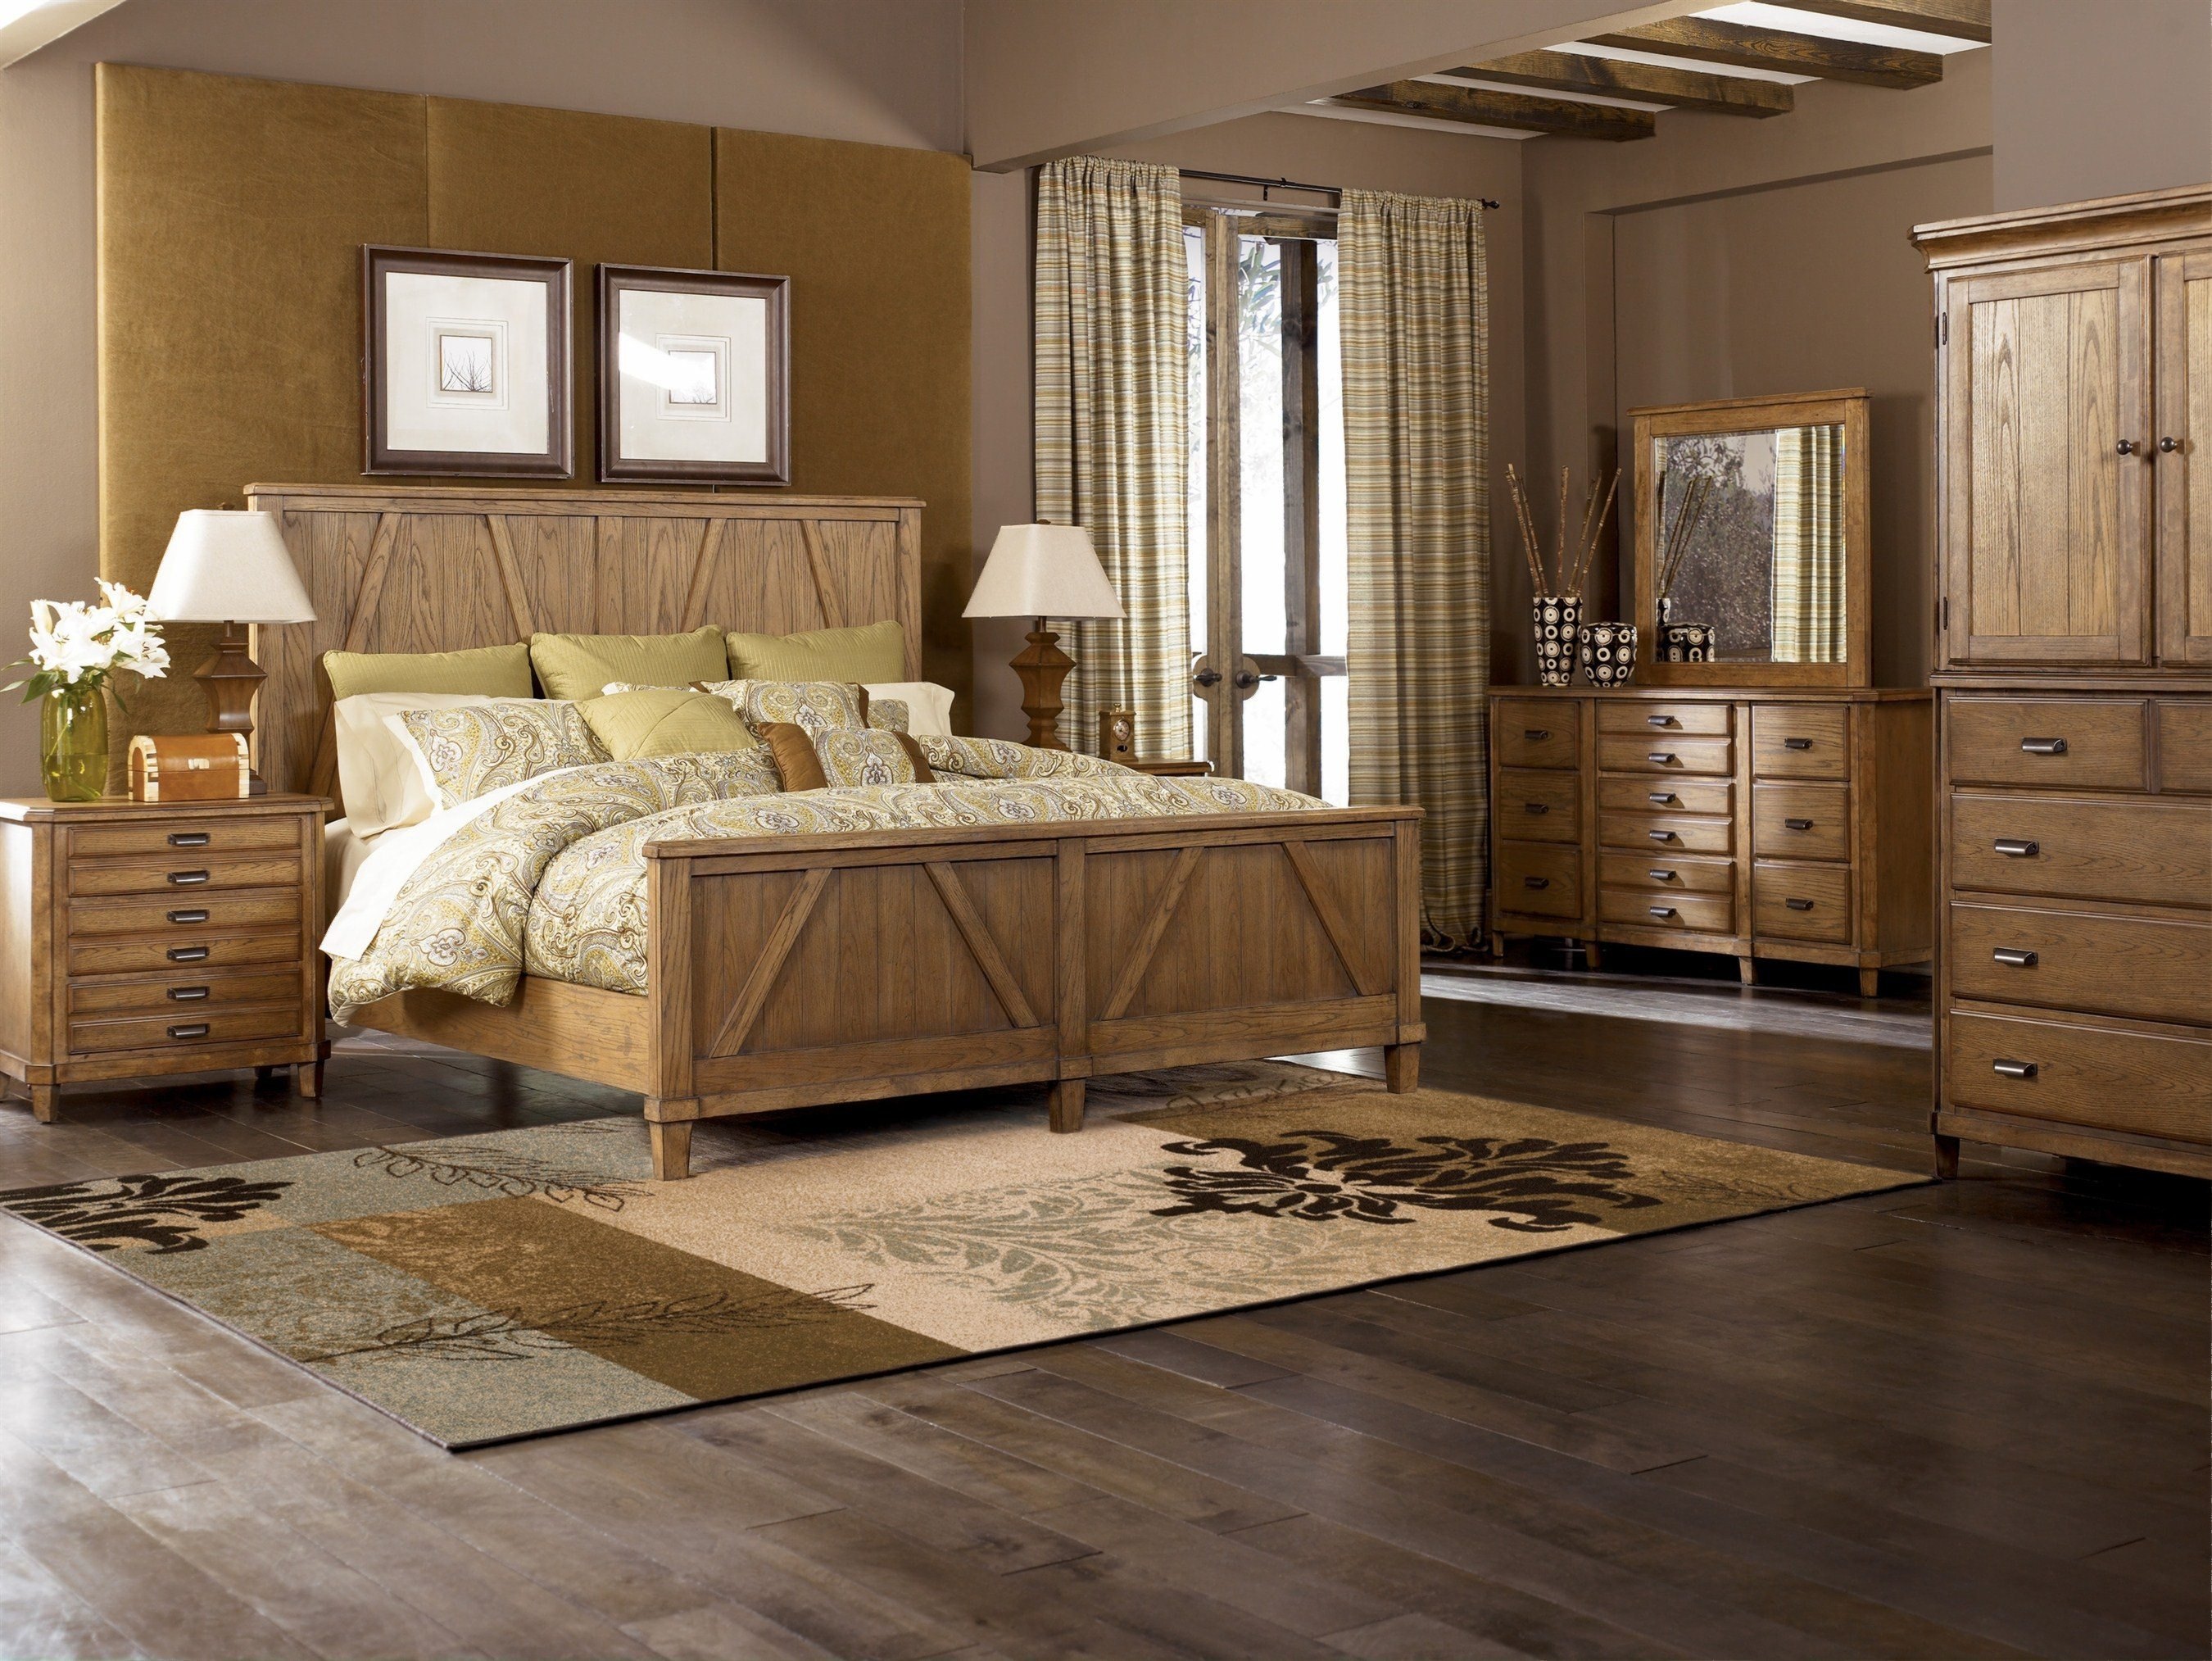 Спальня мебель дерево. Итальянская мебель Oak. Современная деревянная мебель. Спальня из дерева. Спальня с деревянной мебелью.